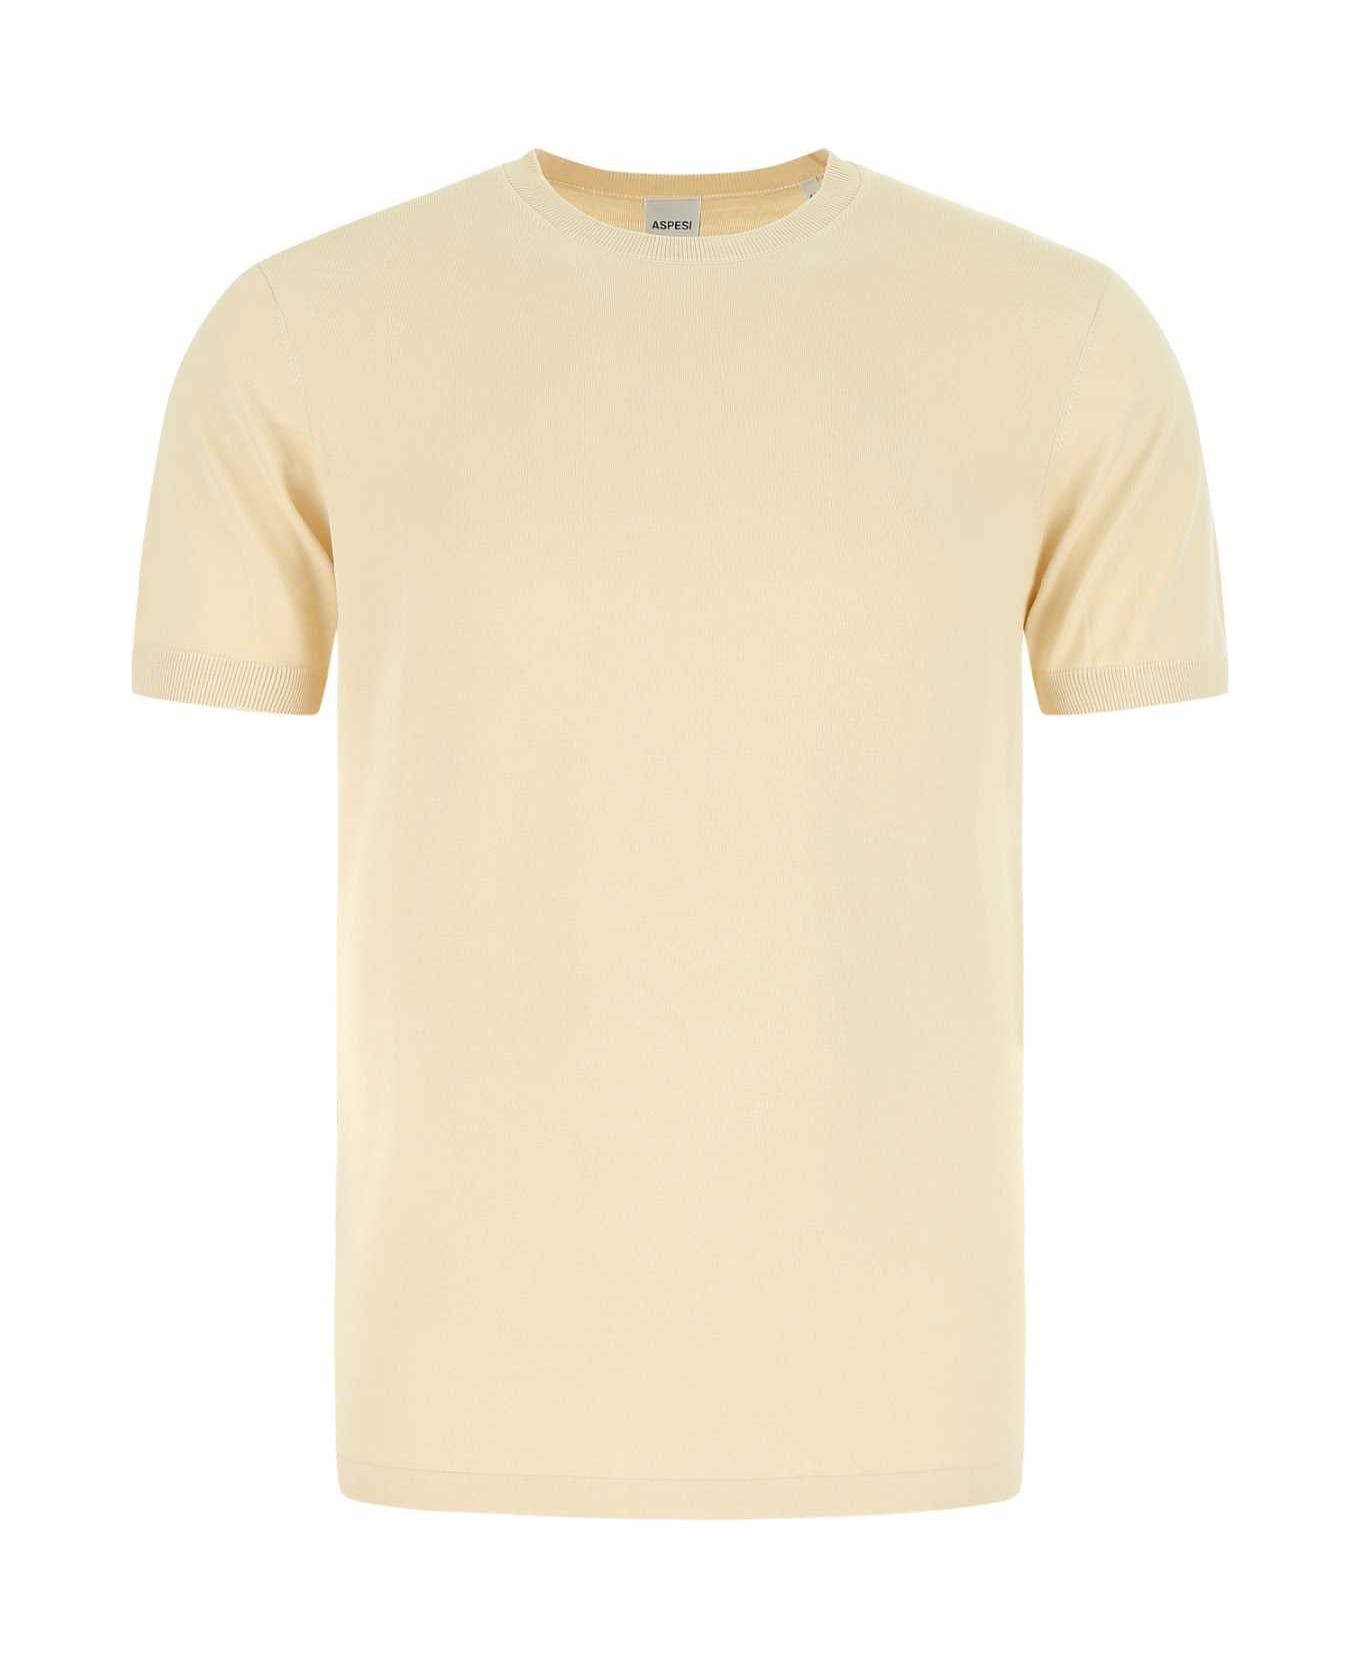 Aspesi Sand Cotton T-shirt - 01043 シャツ